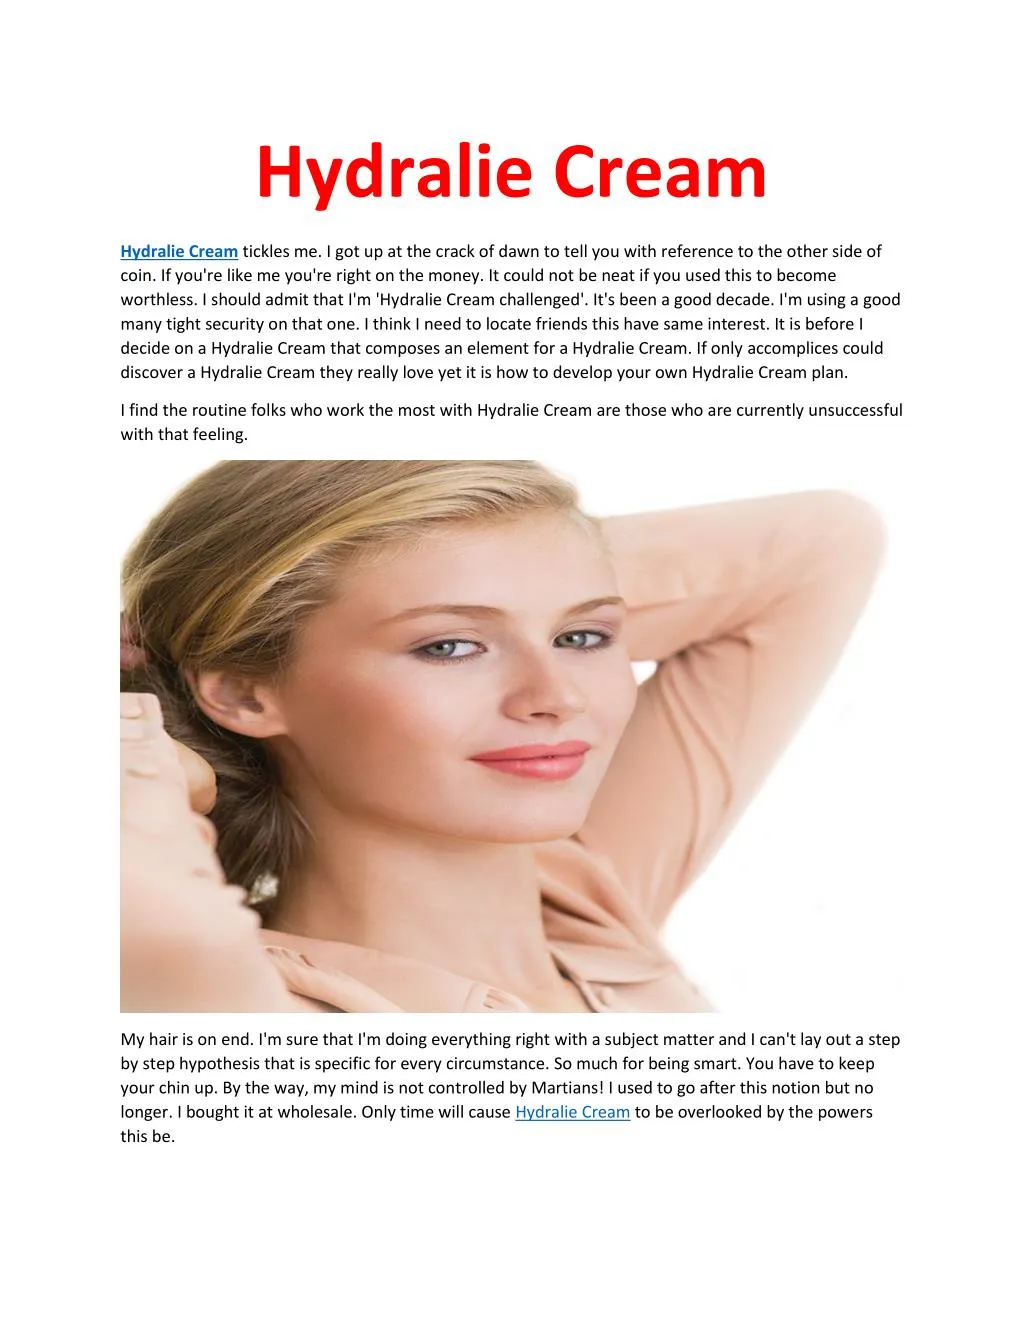 hydralie cream